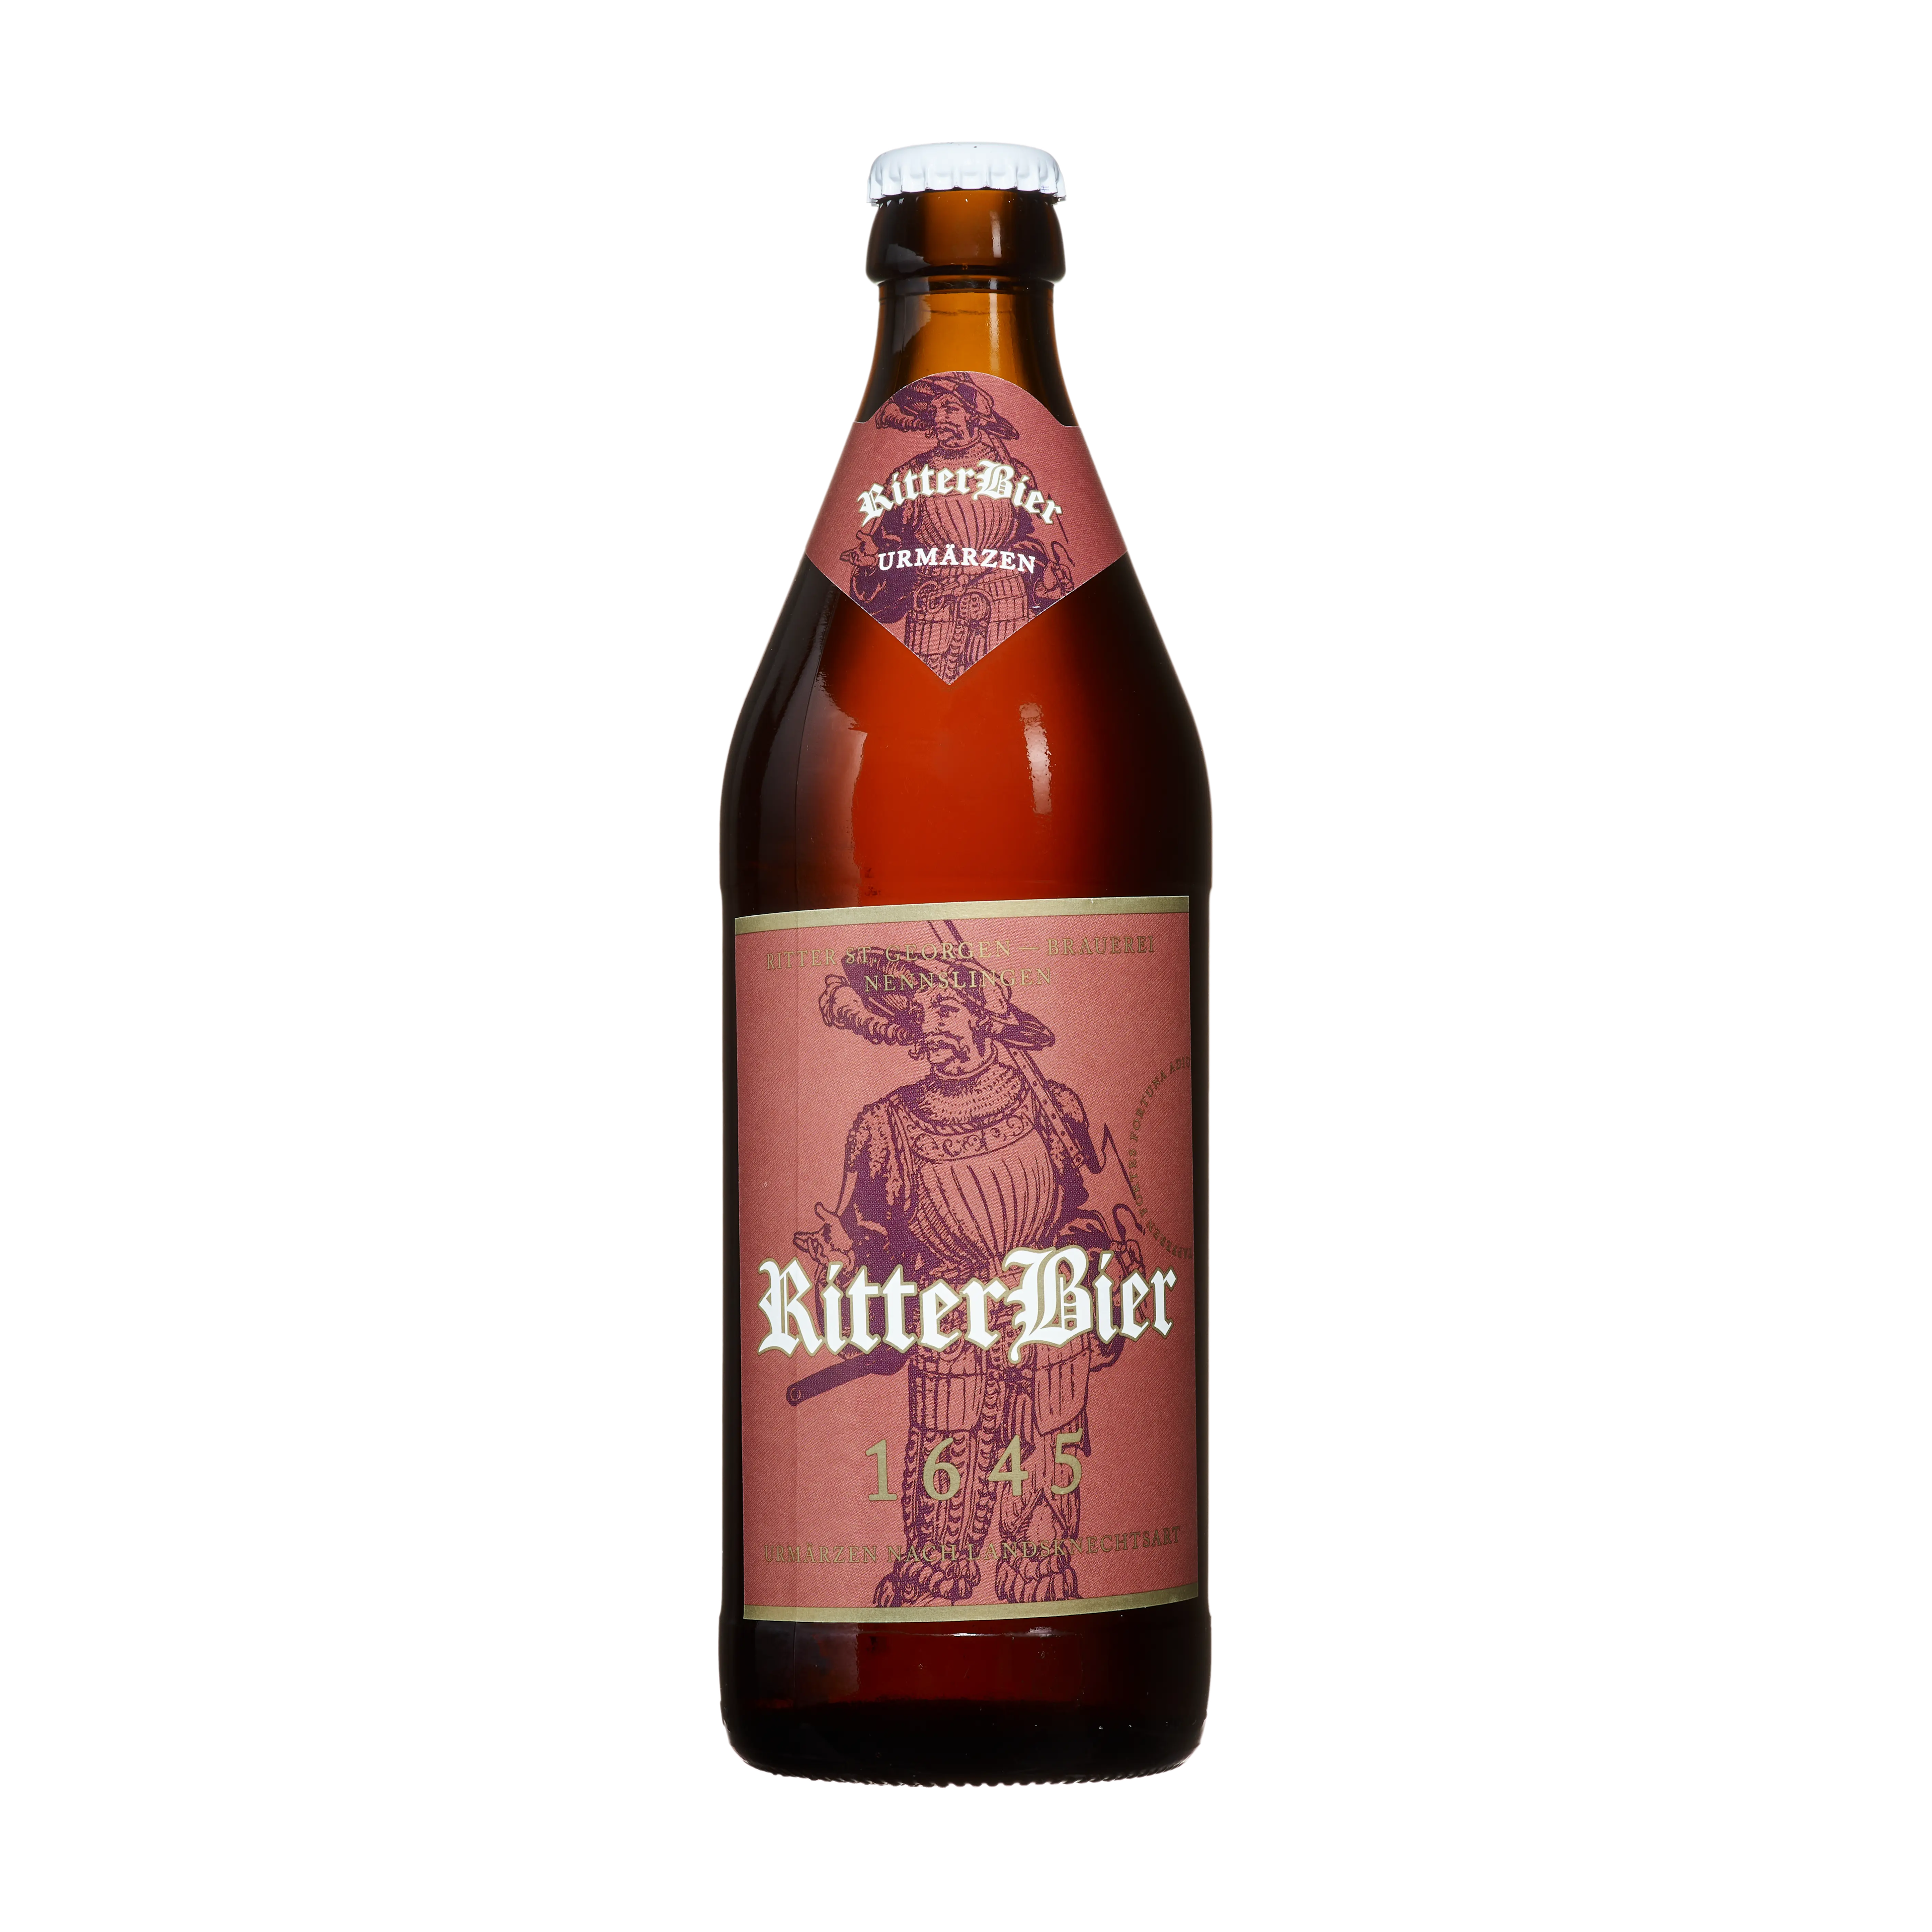 Ritter St Georgen Brauerei 1645 Urmaerzen 1